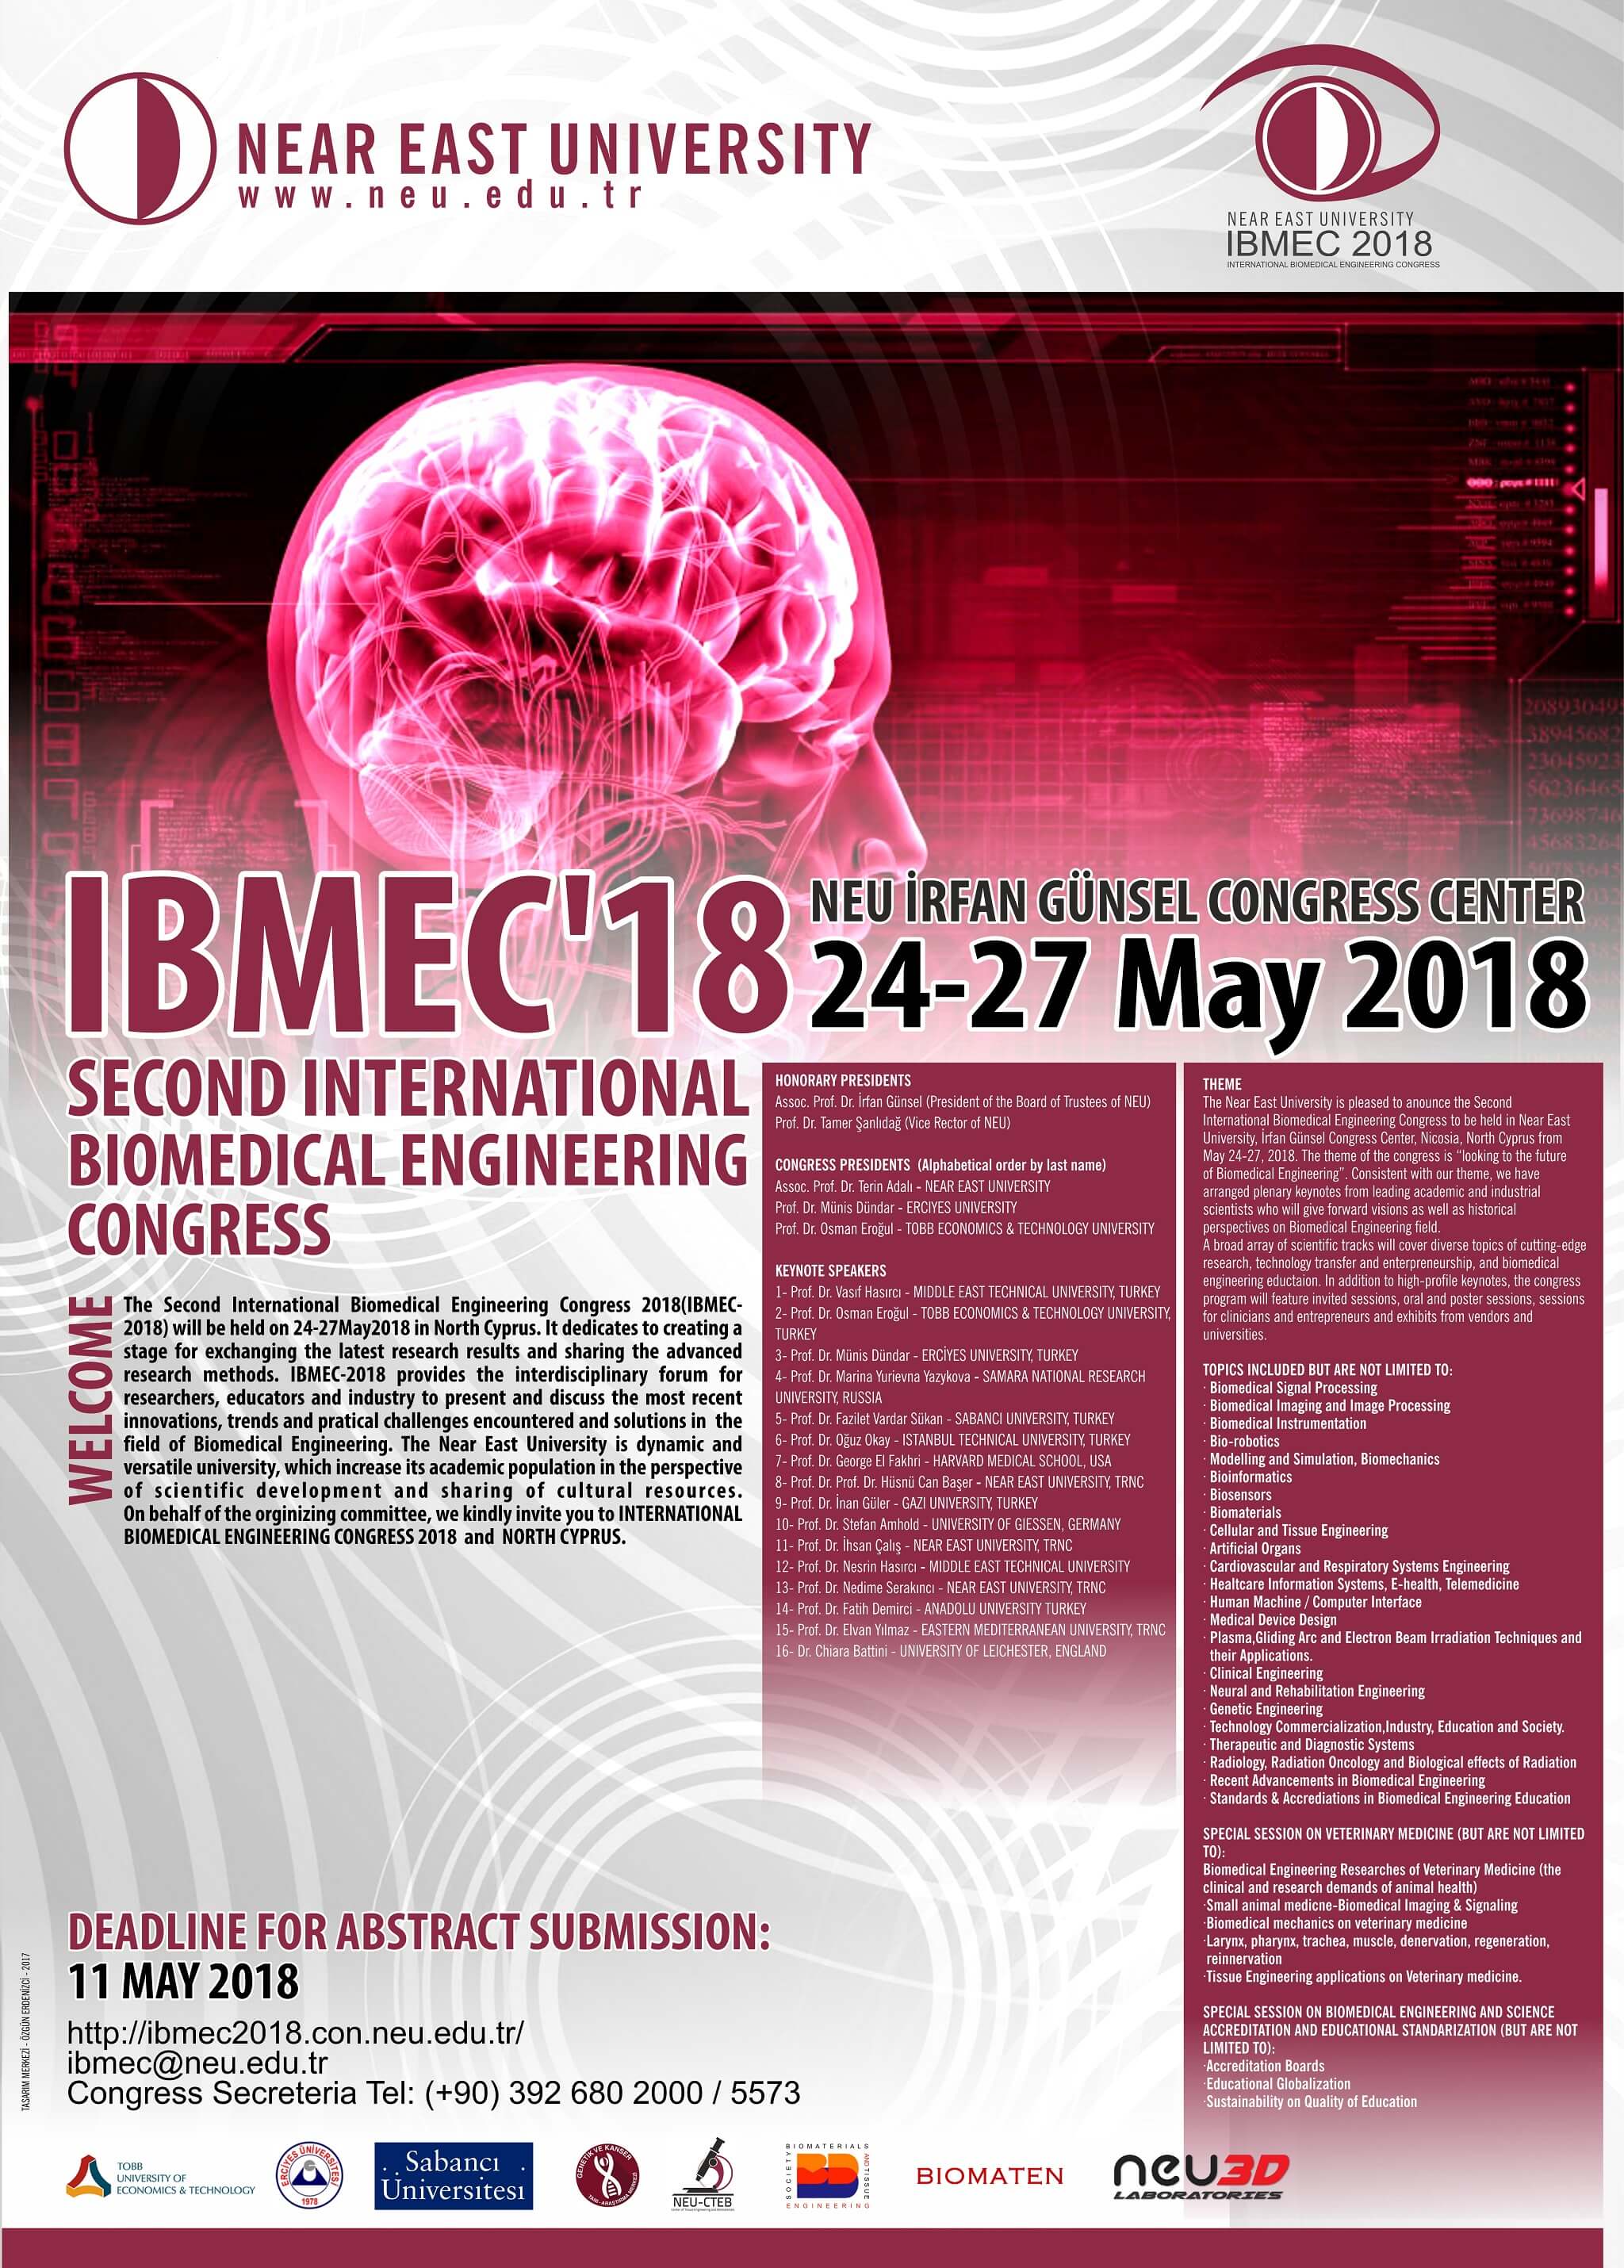 İkinci Uluslararası Biyomedikal Mühendisliği Kongresi 2018 (IBMEC-2018), 24-27 Mayıs 2018 Tarihlerinde Yakın Doğu Üniversitesi İrfan Günsel Kongre Merkezinde Yapılacaktır